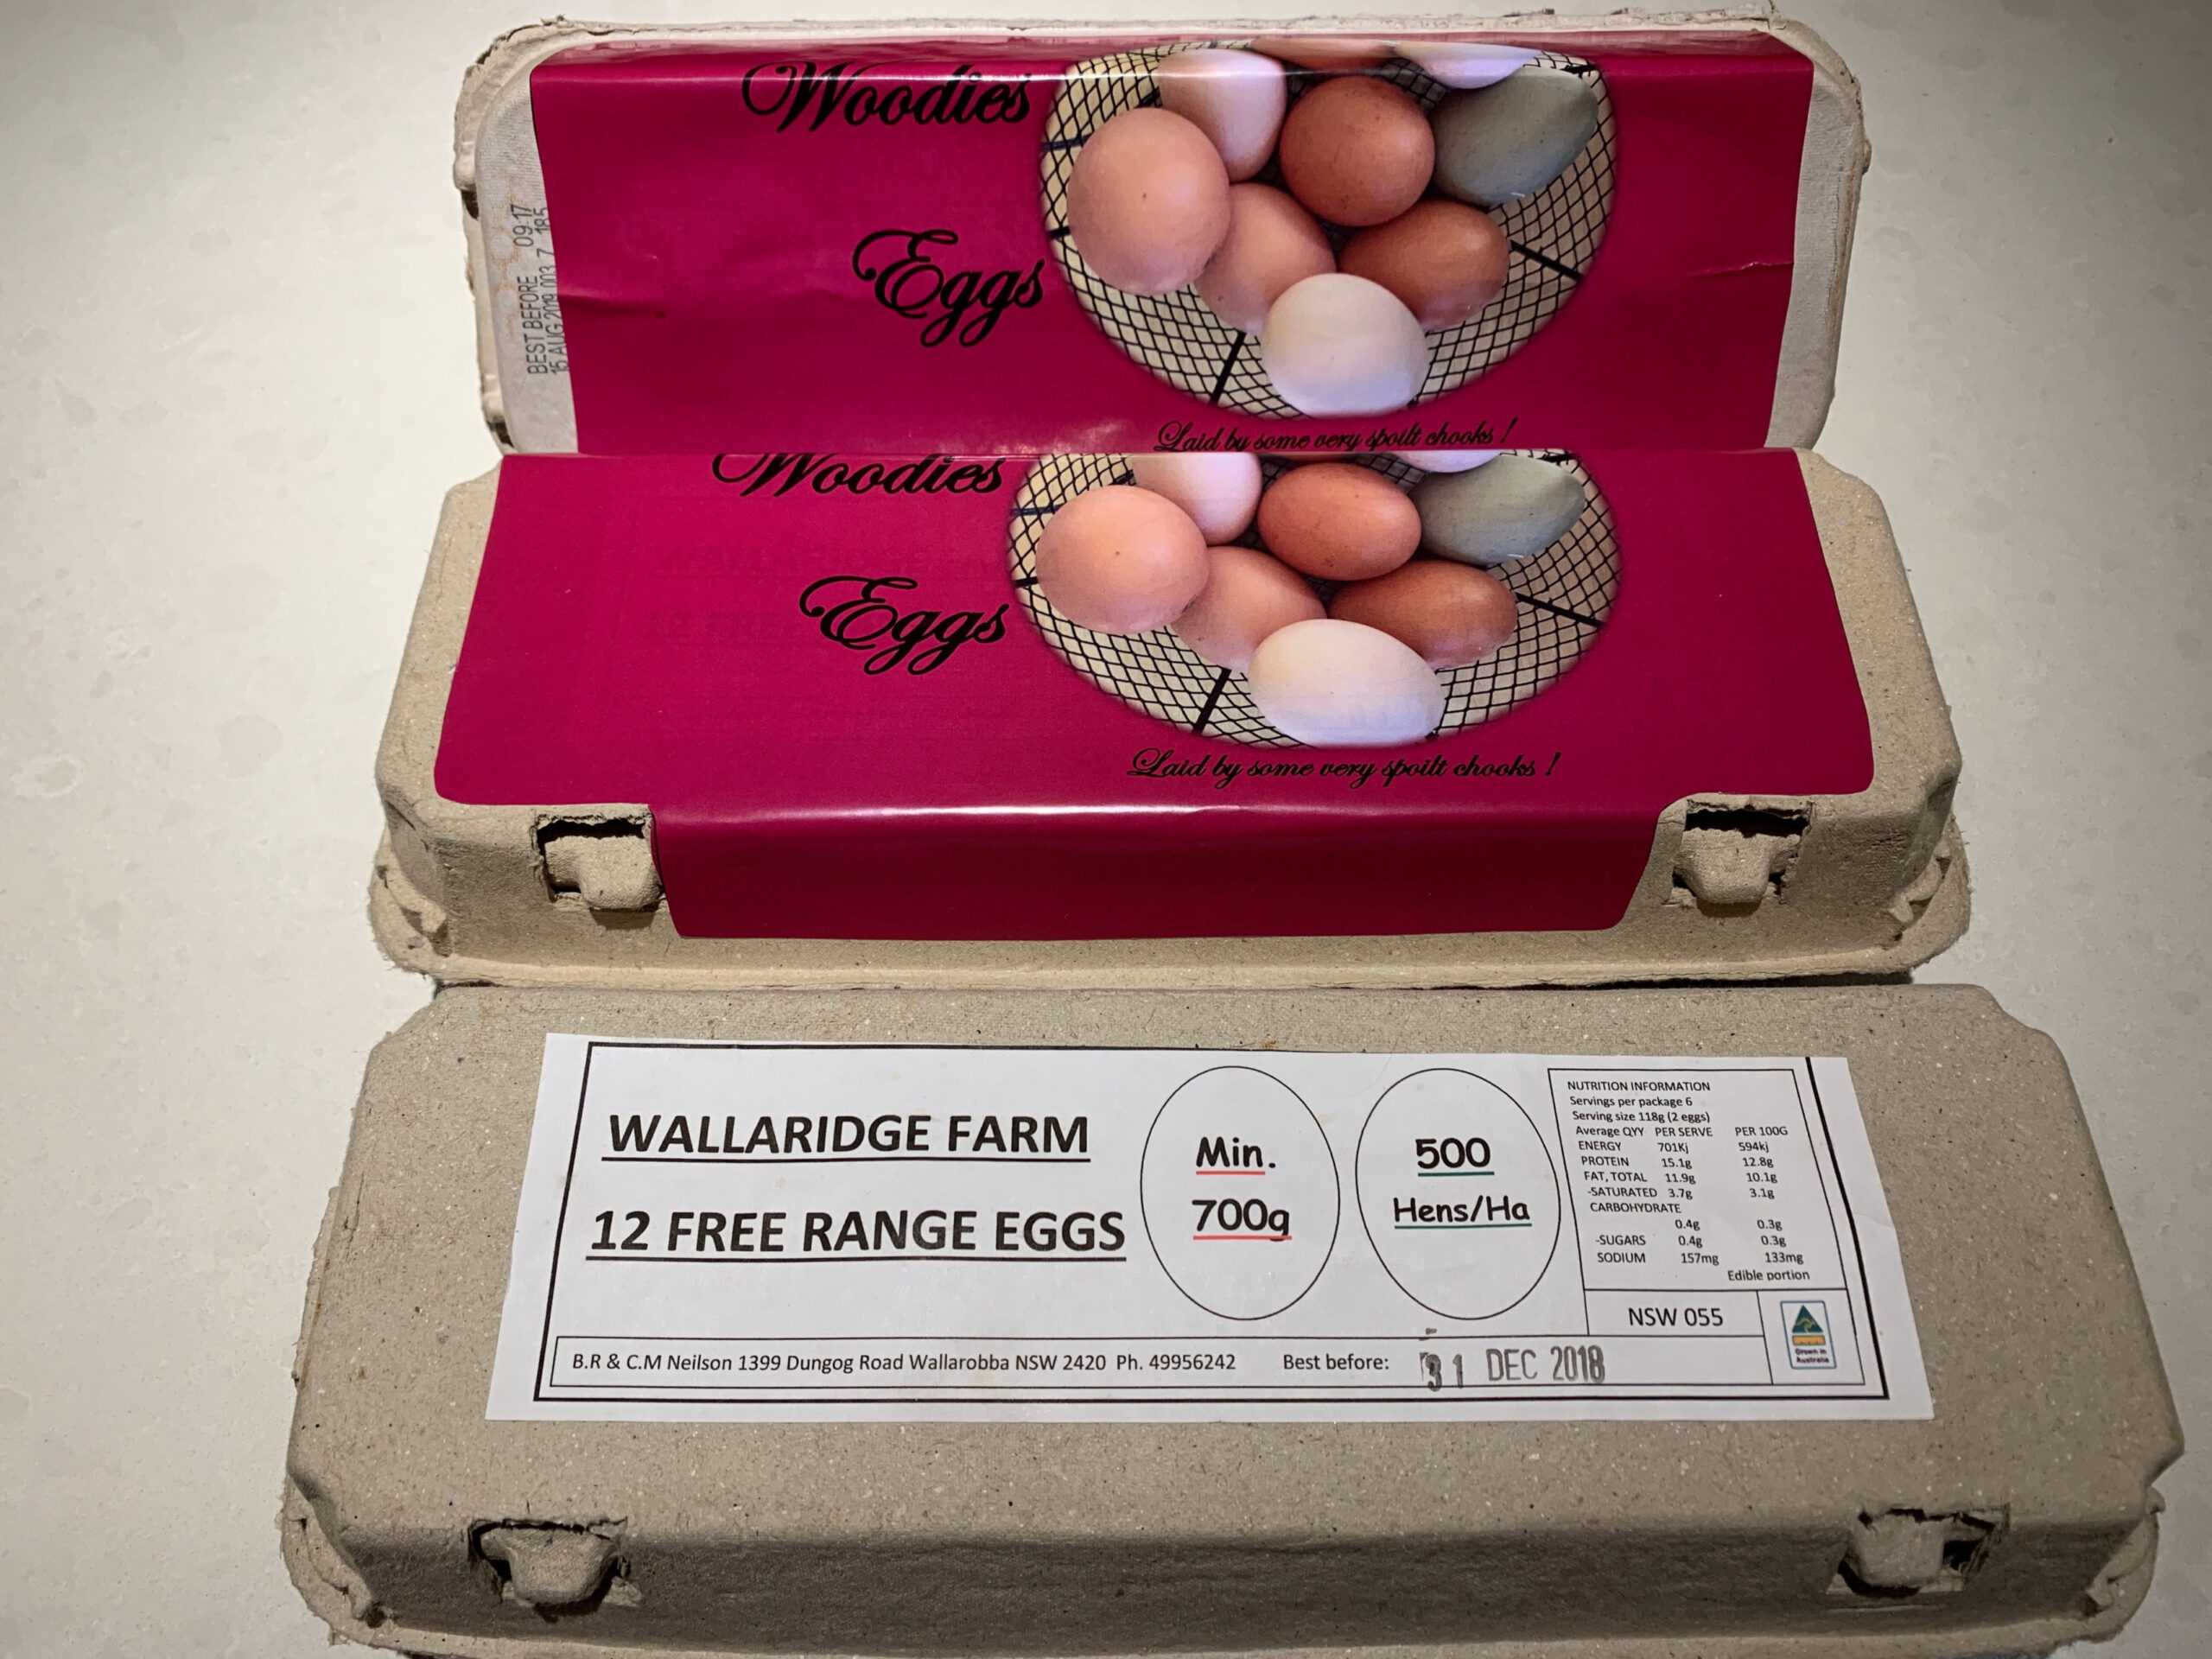 Egg Carton Label With Regard To Egg Carton Labels Template